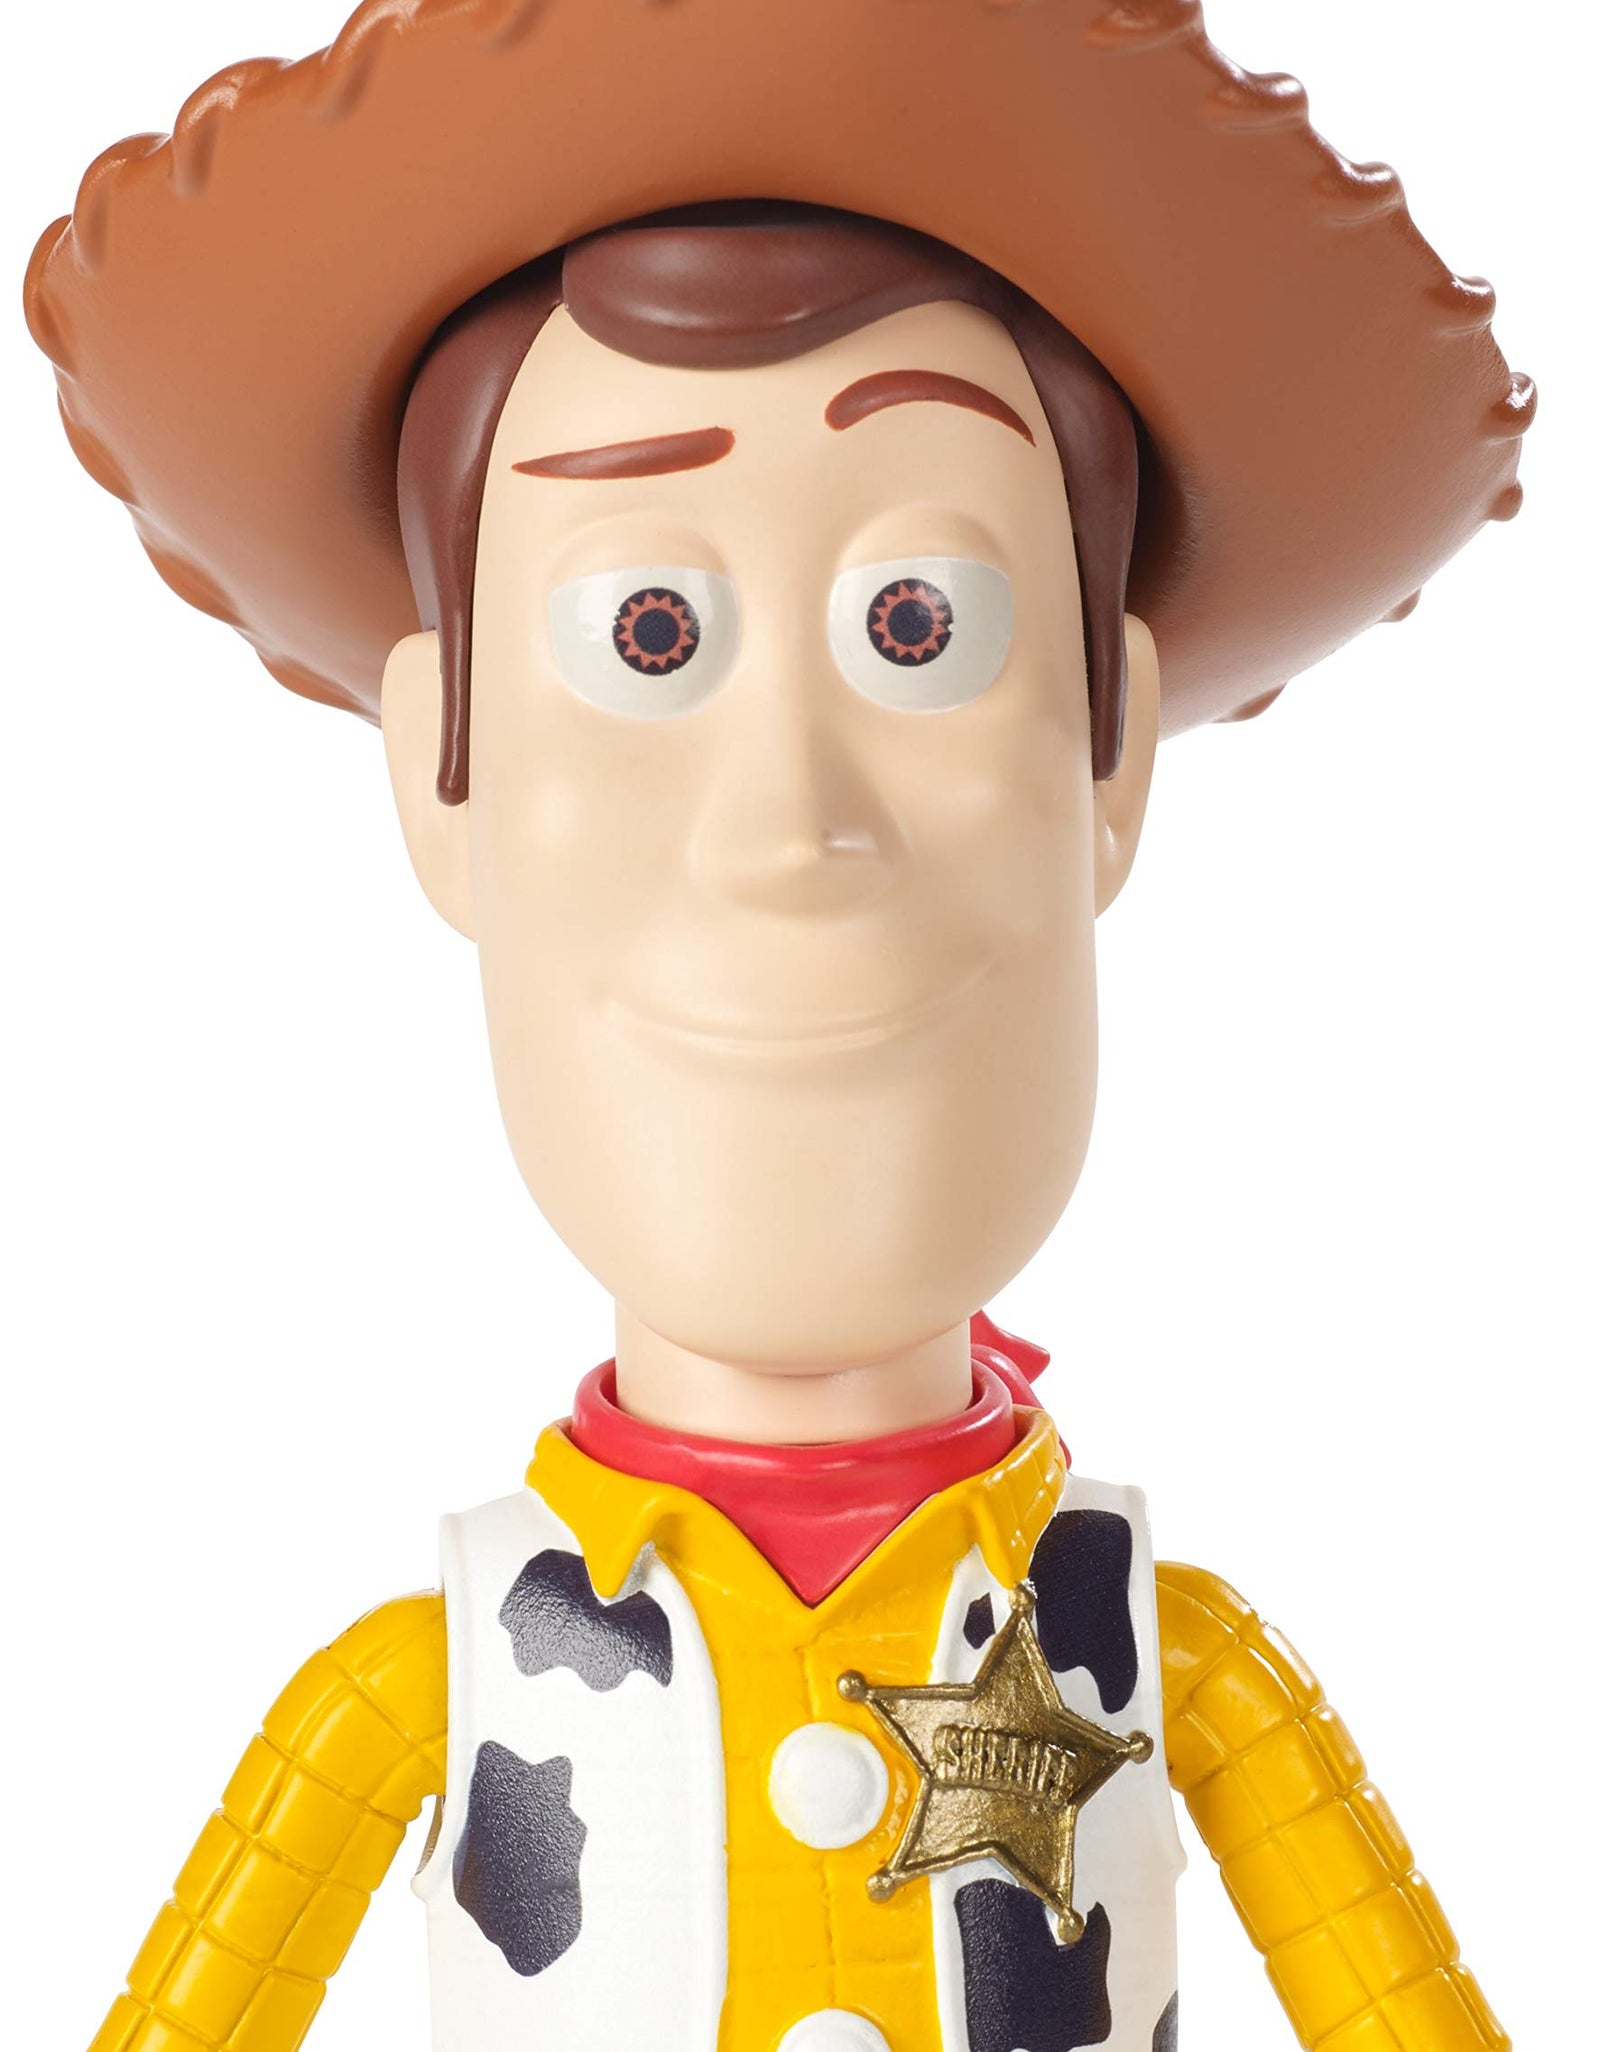 Disney Pixar Toy Story Woody Figure